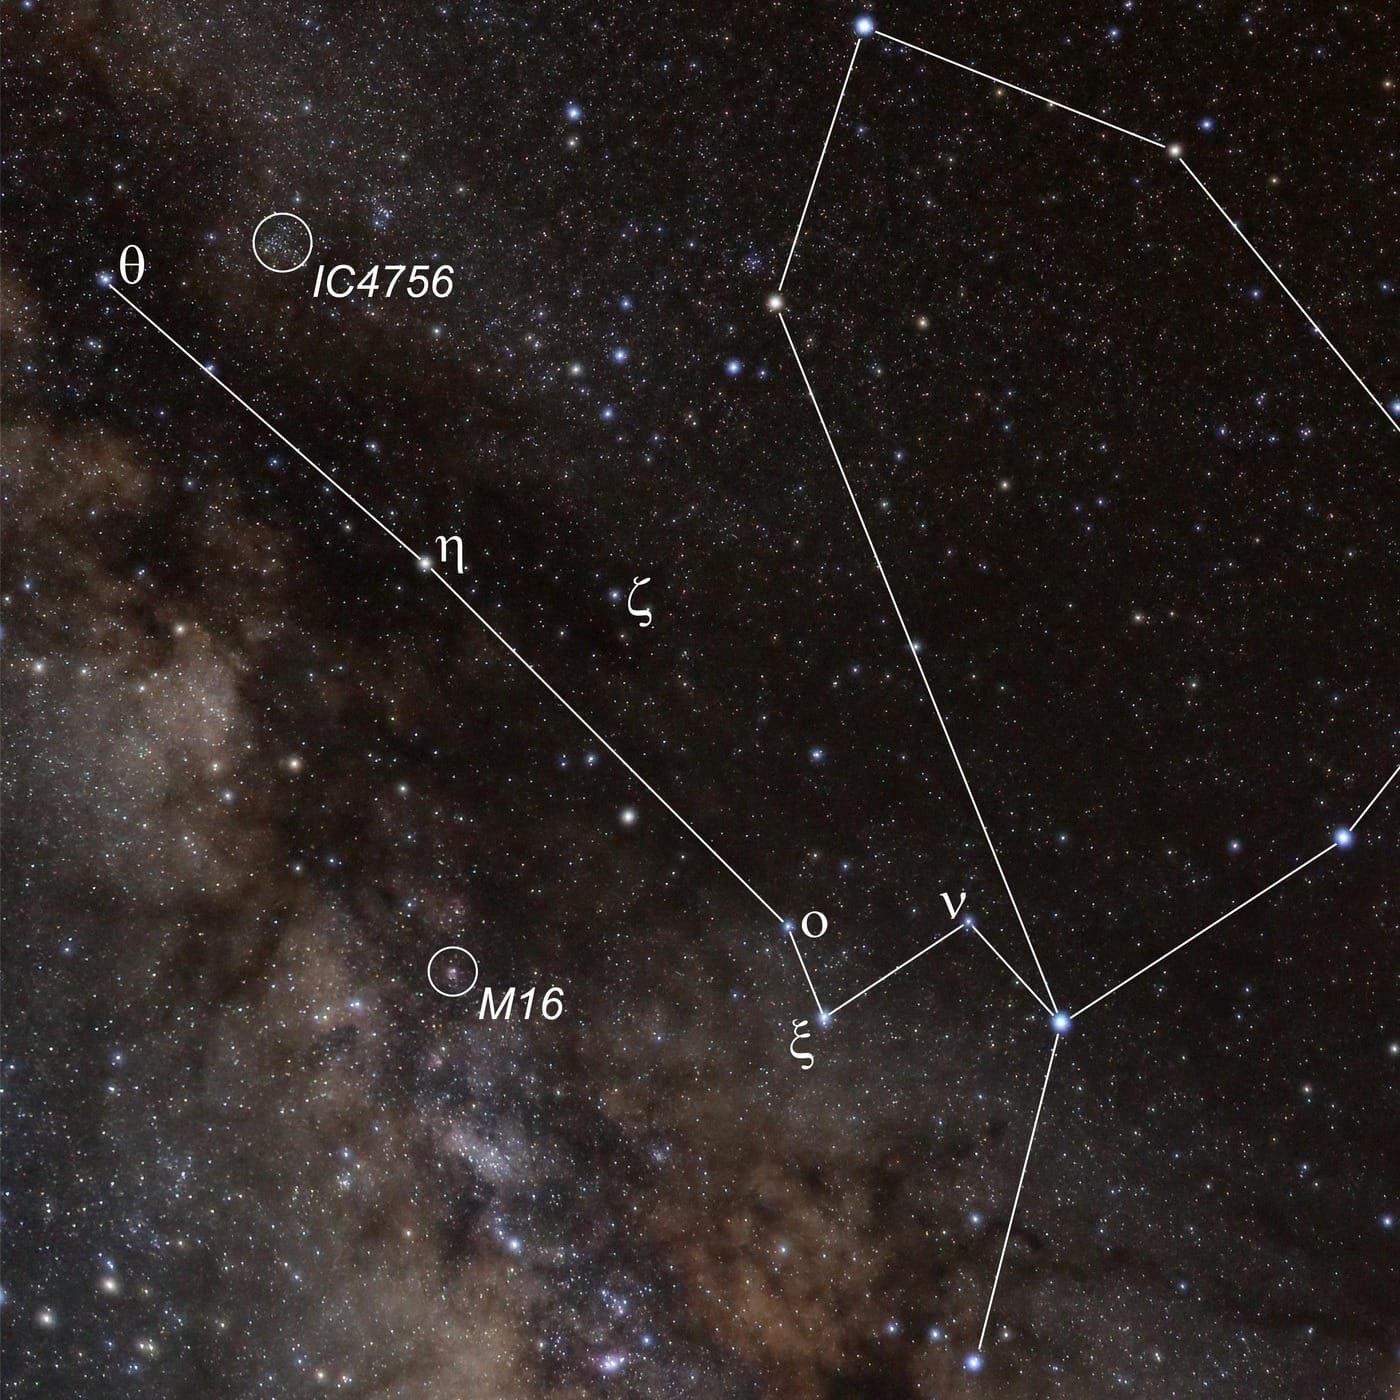 Die offenen Sternhaufen M16 und IC4756 im Sternbild Schlange liegen im Band der Milchstraße.